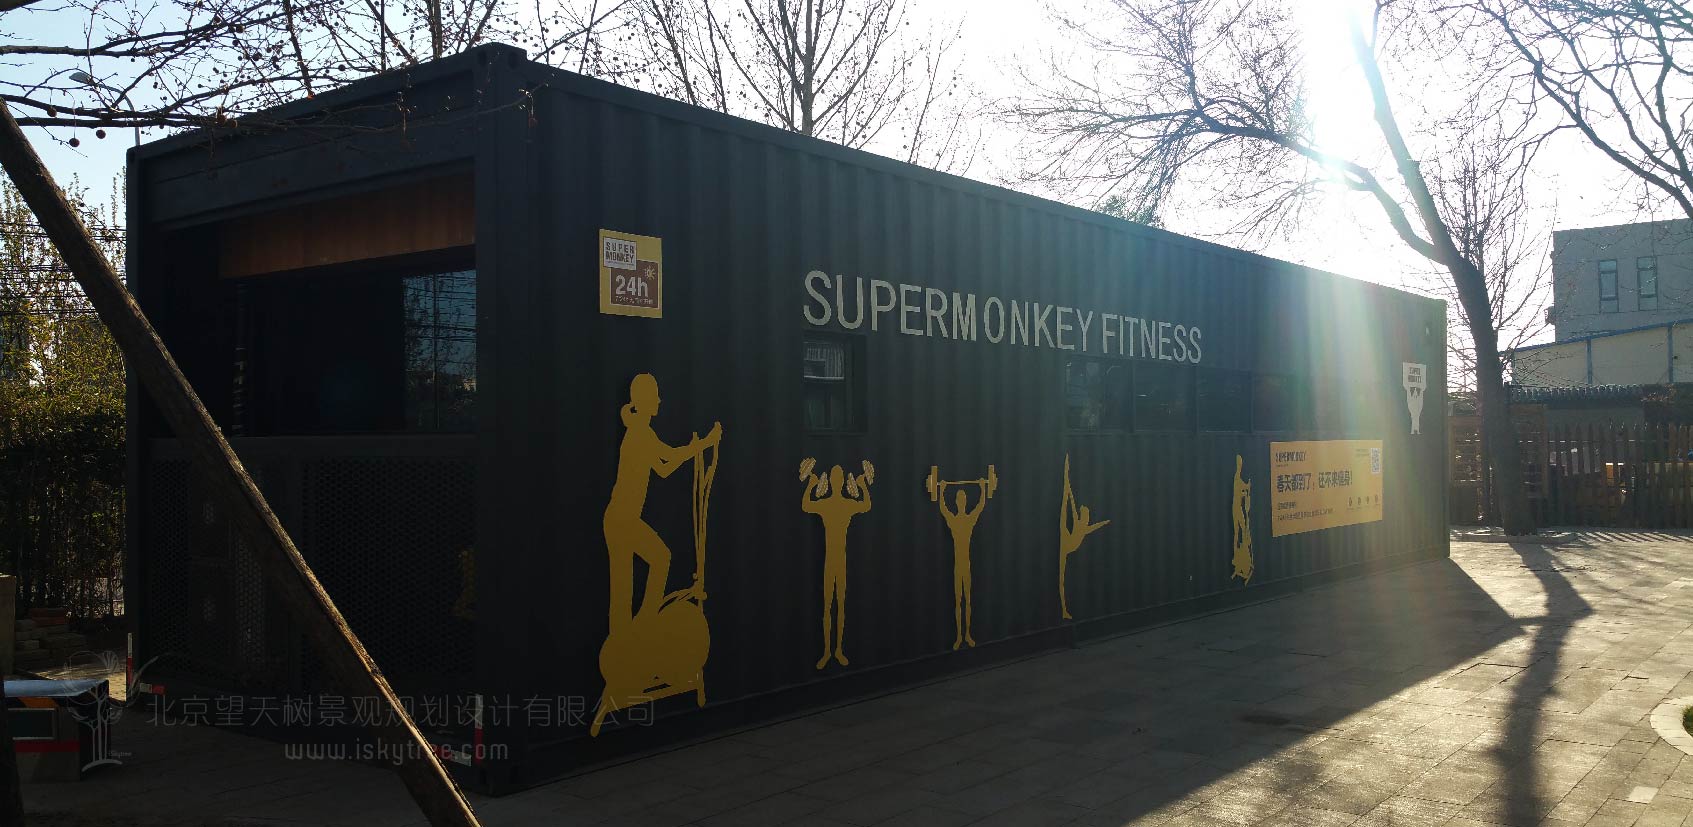 超级猴健身俱乐部集装箱空间设计